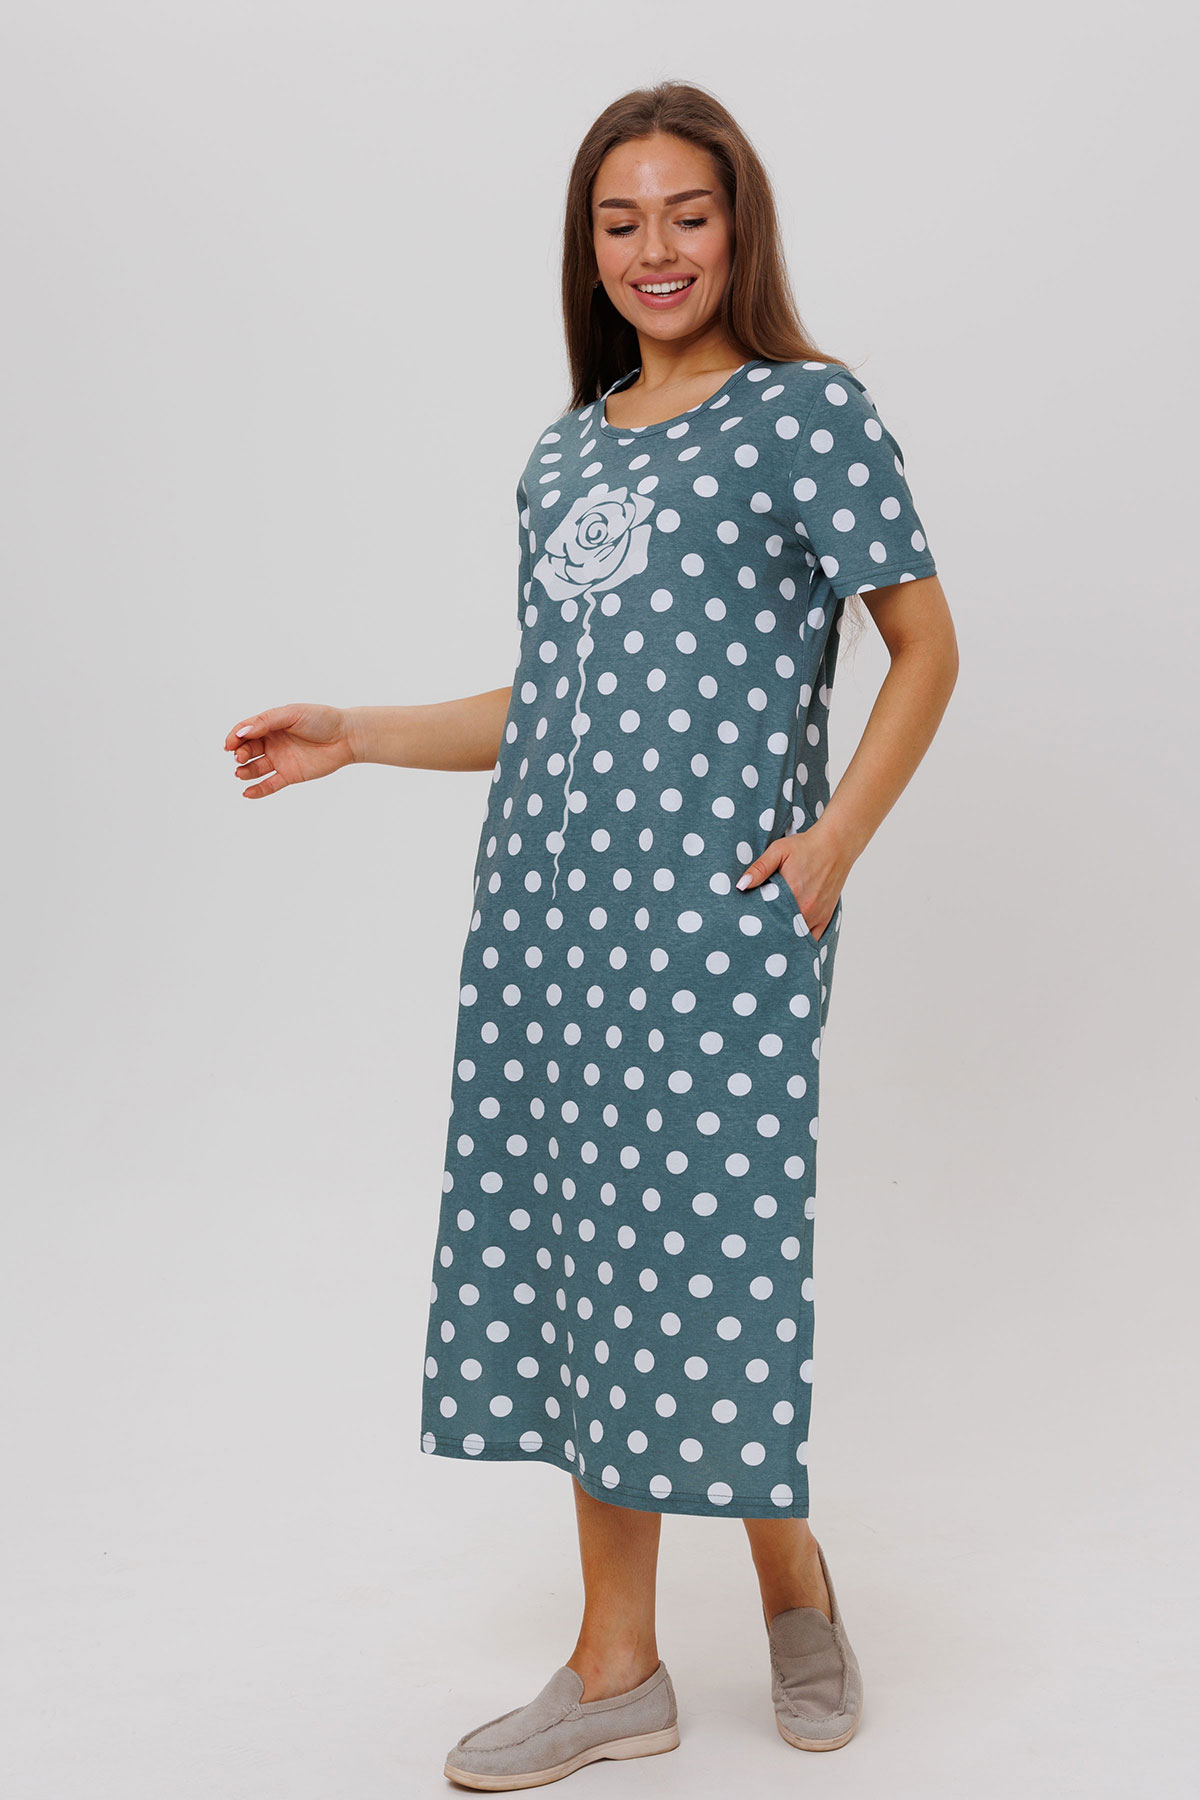 Жен. платье повседневное арт. 23-0545 Зеленый р. 56 Моделлини, размер 56 - фото 3